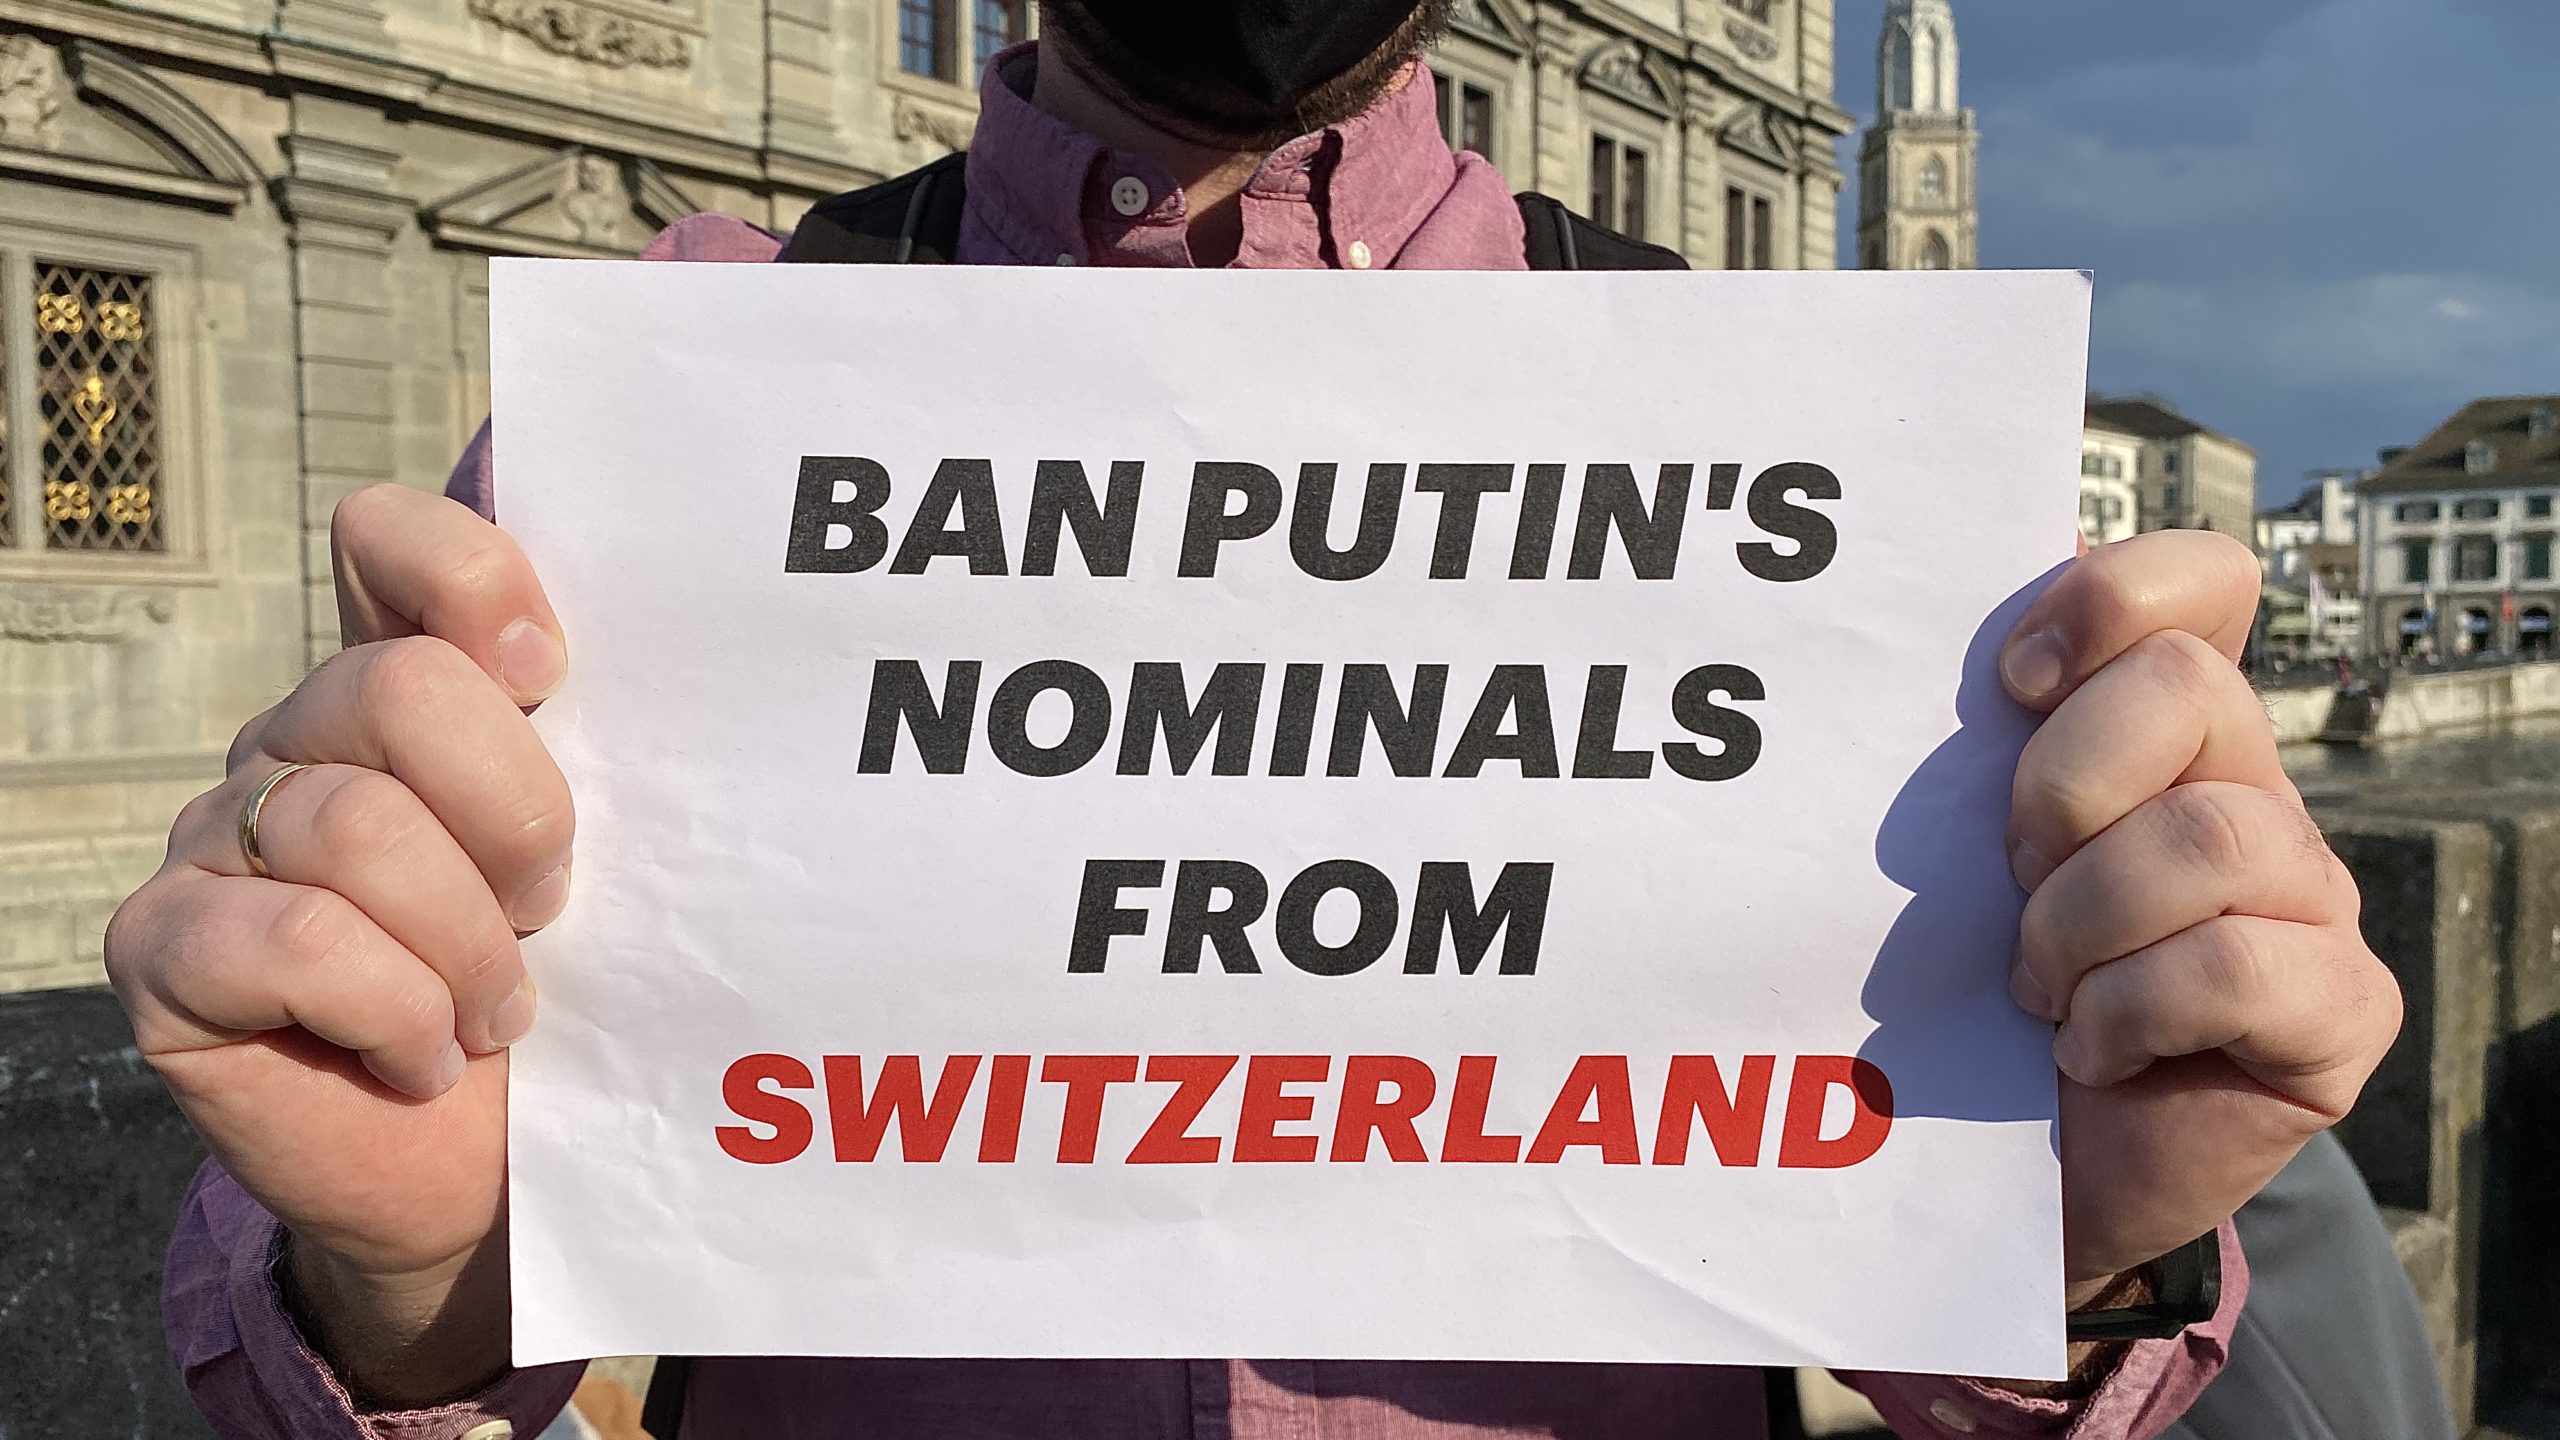 Участники митинга в Цюрихе требуют освободить российских политзаключенных, пресечь импорт коррупции из России. 21.04.2021 г. (© schwingen.net)